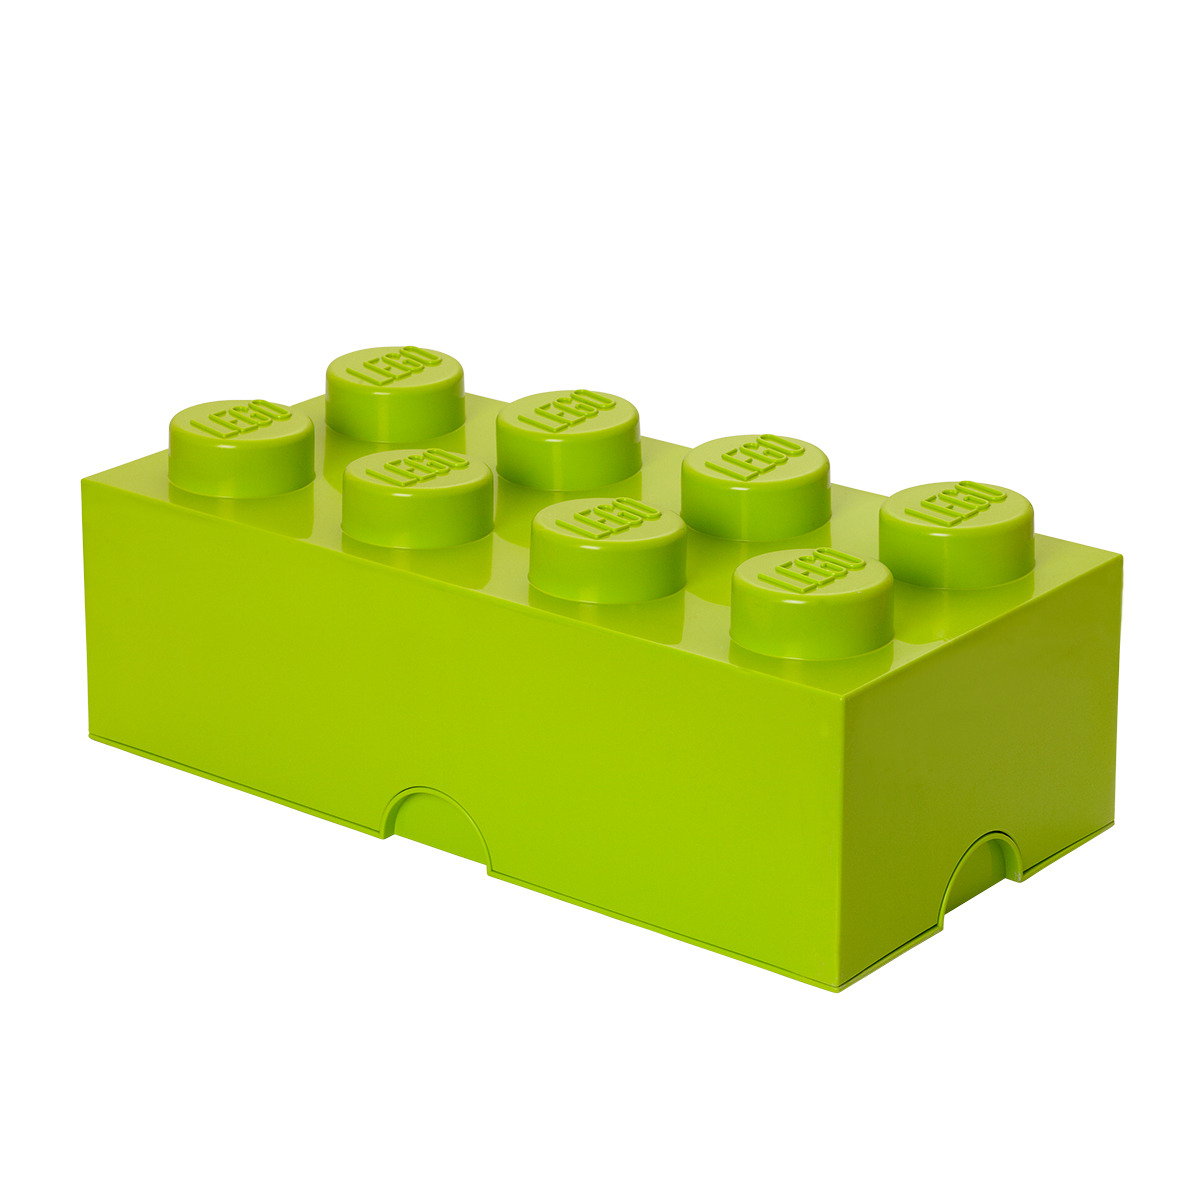 おもちゃ 収納 おもちゃ箱 レゴブロック 収納ボックス 幅50 レゴ